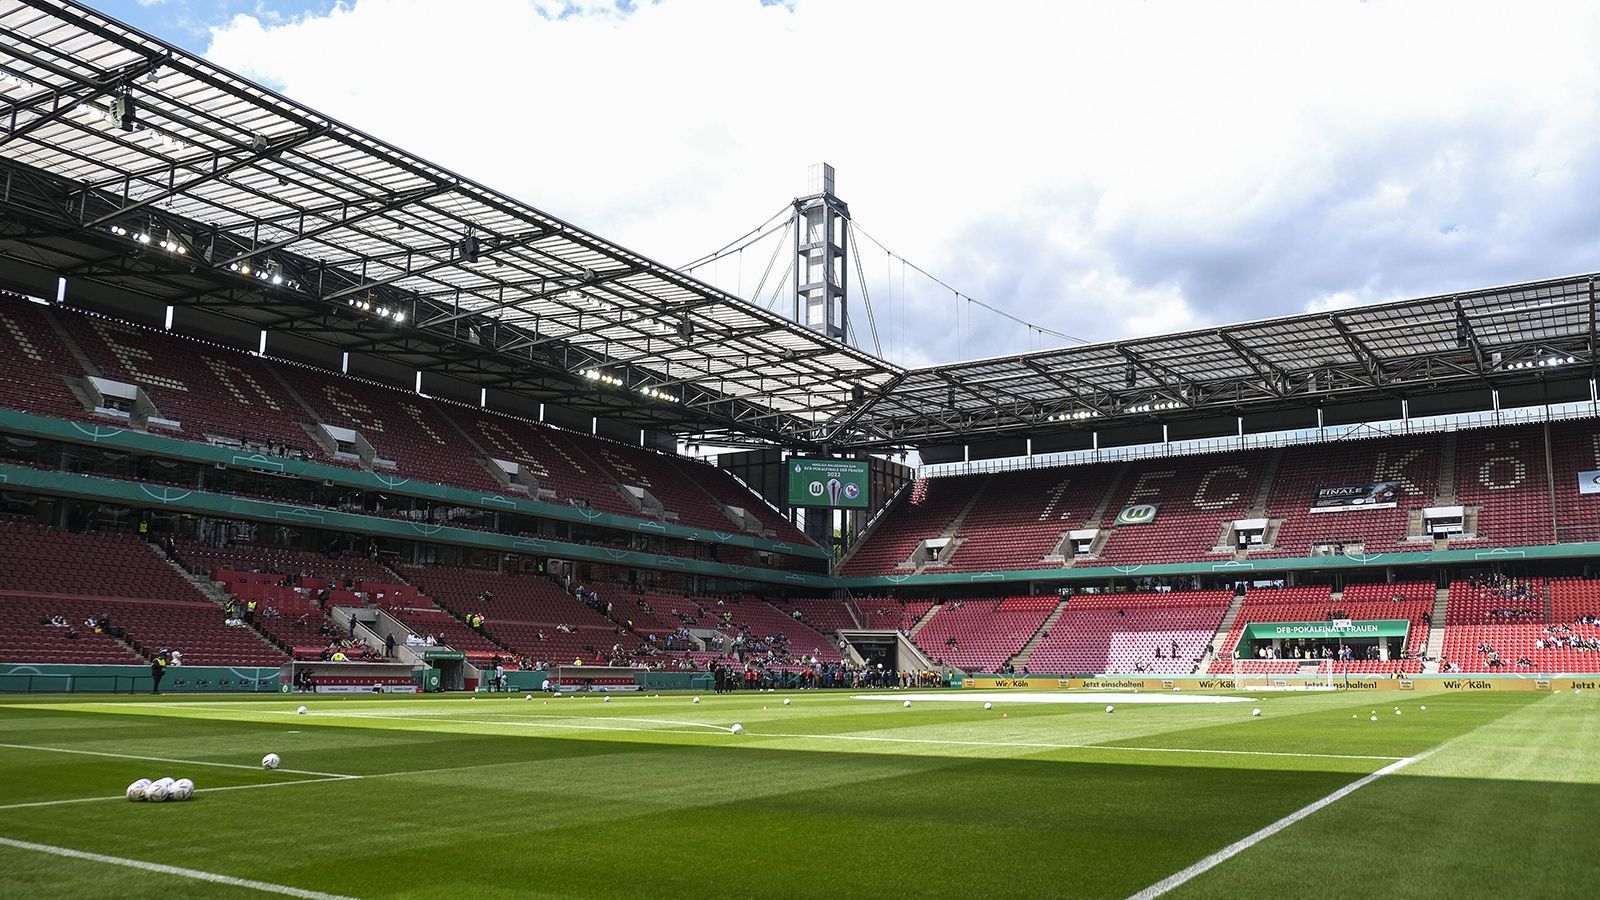 
                <strong>Cologne Stadium</strong><br>
                Das "RheinEnergieSTADION" wird bei der Europameisterschaft 2024 zum "Cologne Stadium". Der Kölner Energieversorger Rheinenergie ist zwar bereits seit 2004 Namensgeber des Stadions, wie viele andere Sponsoren besitzt es allerdings keine Partnerschaft mit der UEFA.
              